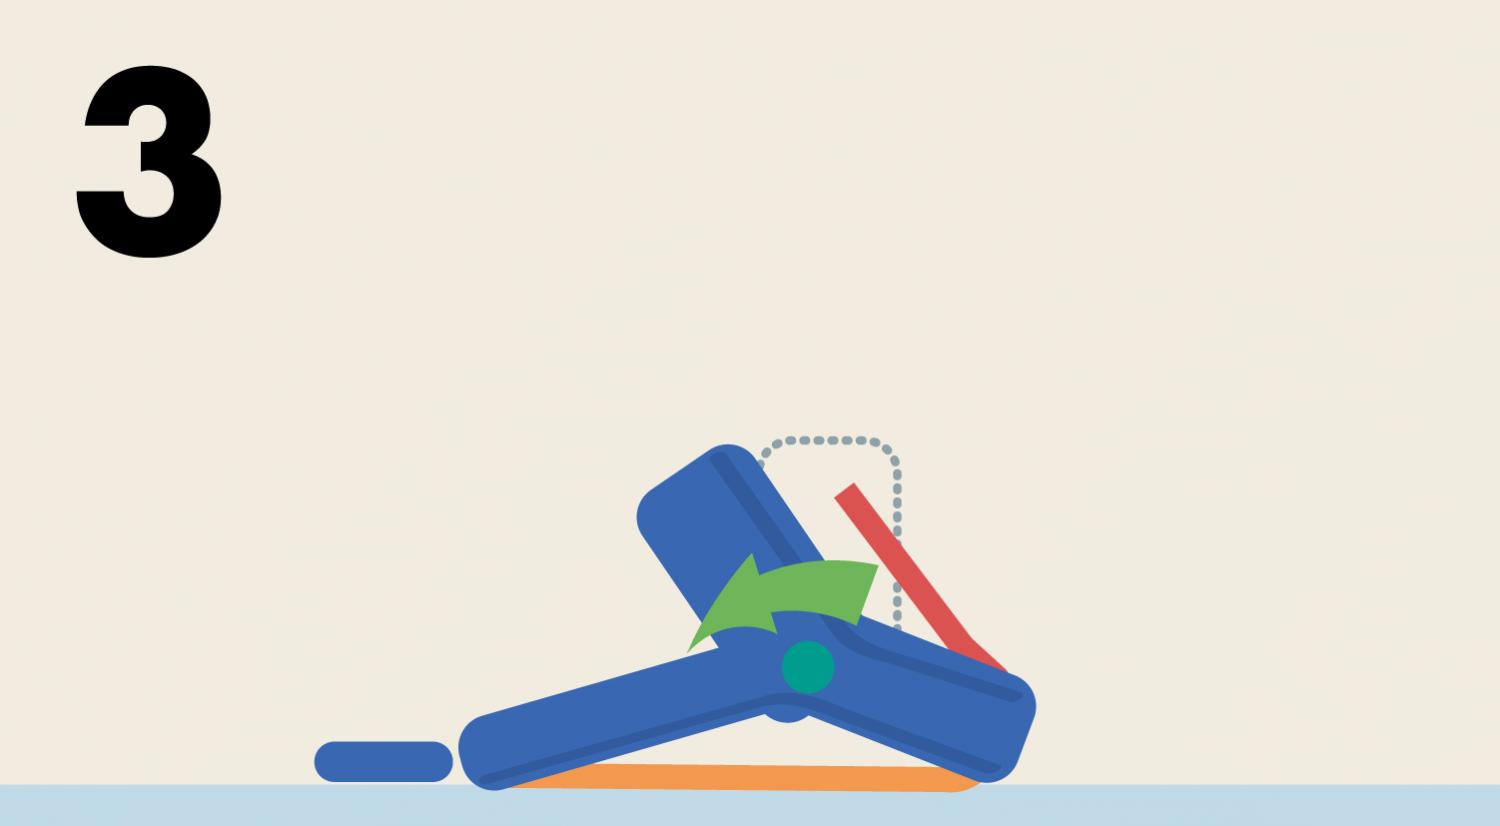 足首を軸に足関節が前に倒れ、アキレス腱が伸びて足底腱膜が引っ張られ、体が前に進みます。